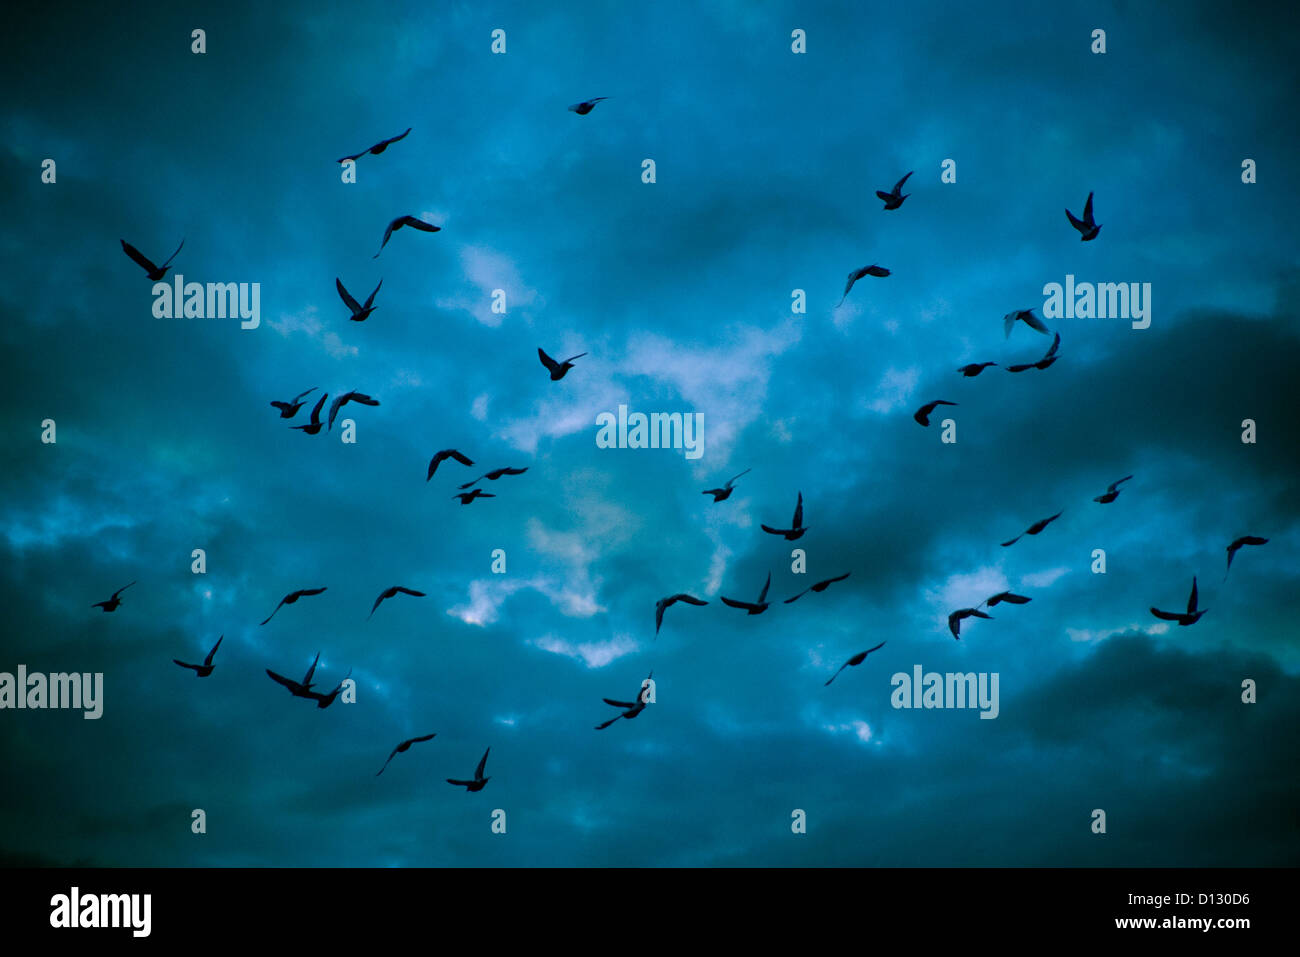 Stormo di piccioni in silhouette battenti contro un cielo drammatico Foto Stock